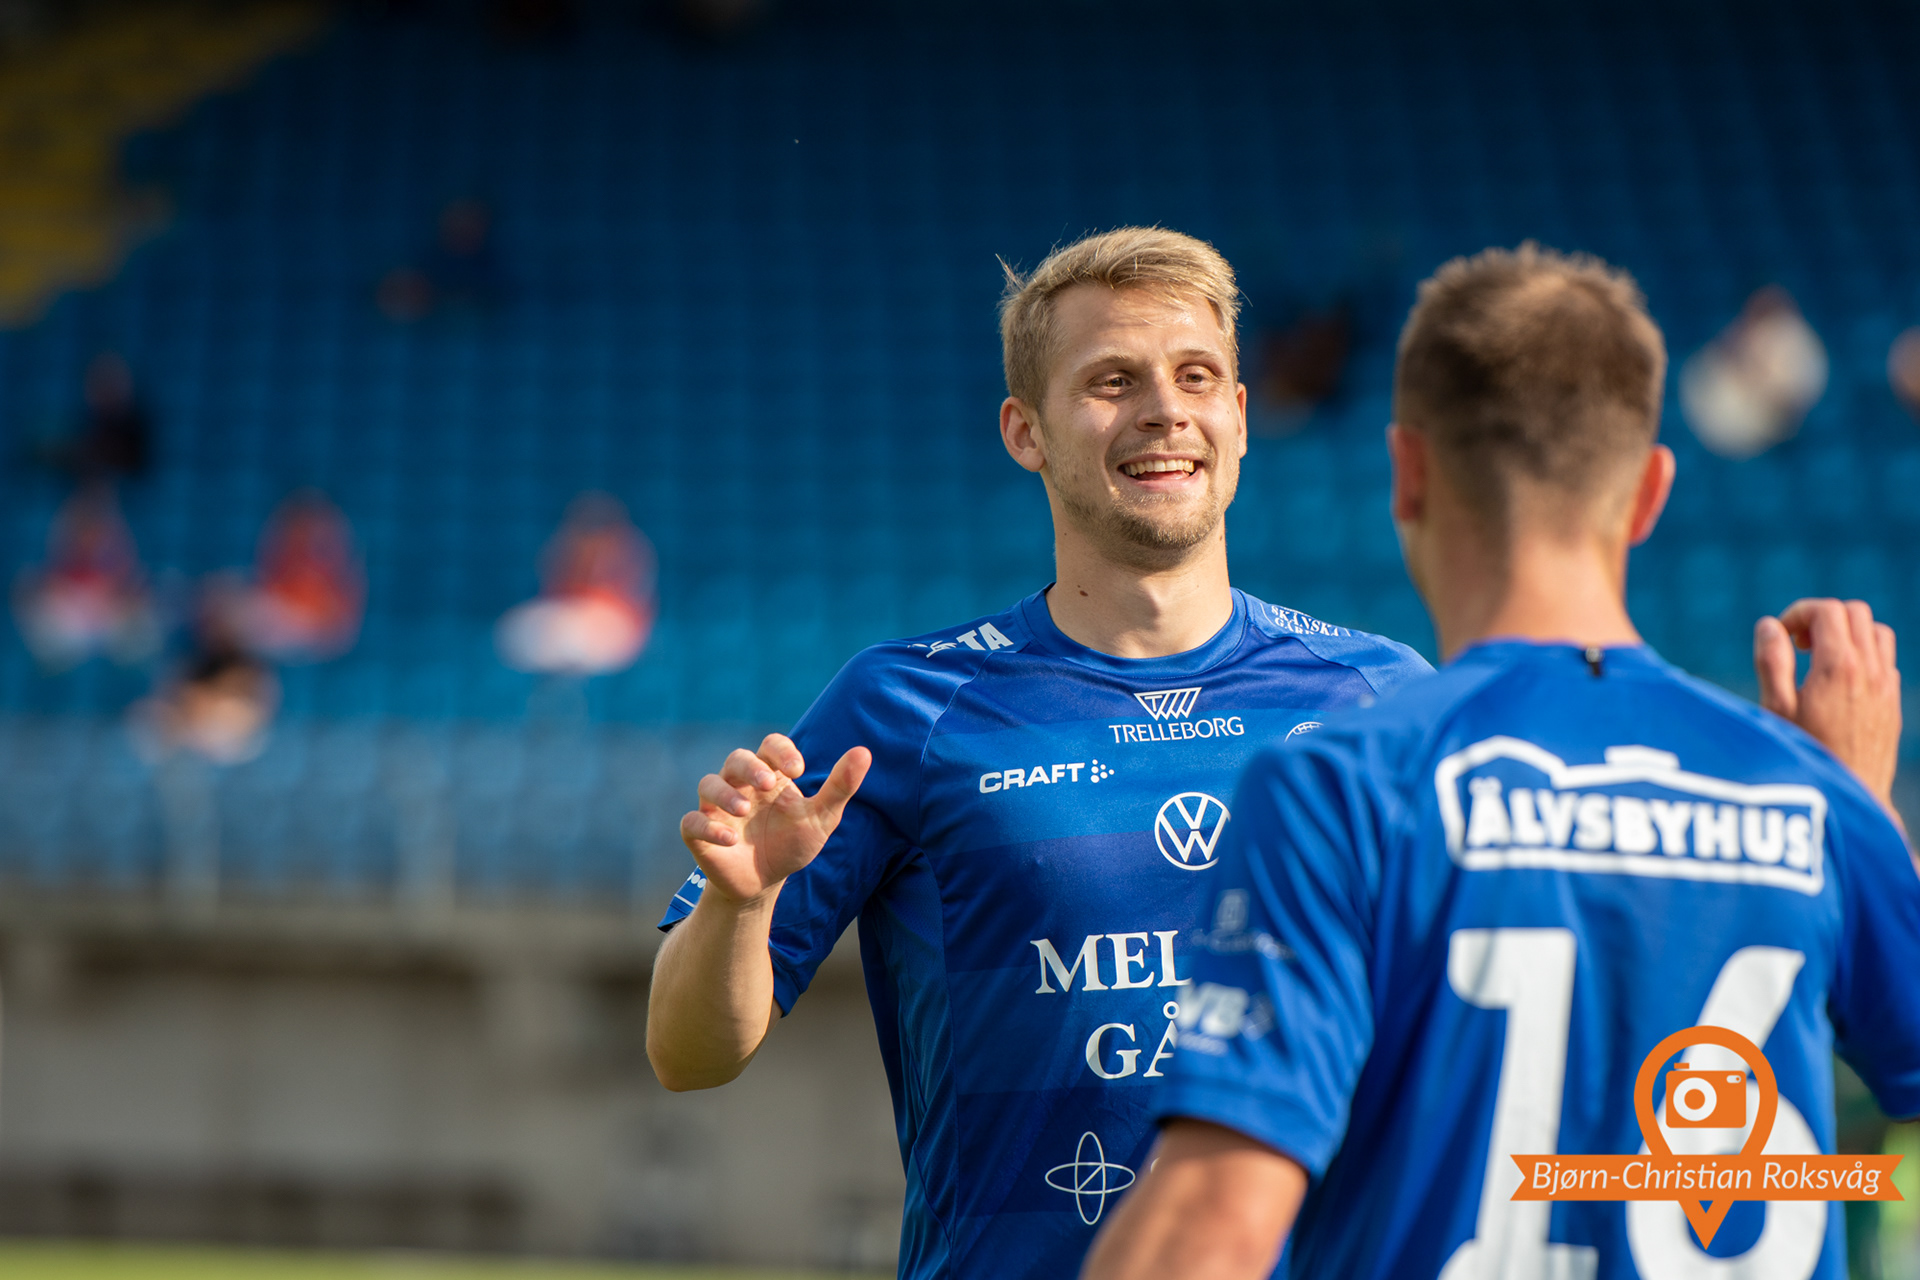 Bjørn-Christian Roksvåg - Trelleborg - Dalkurd FF